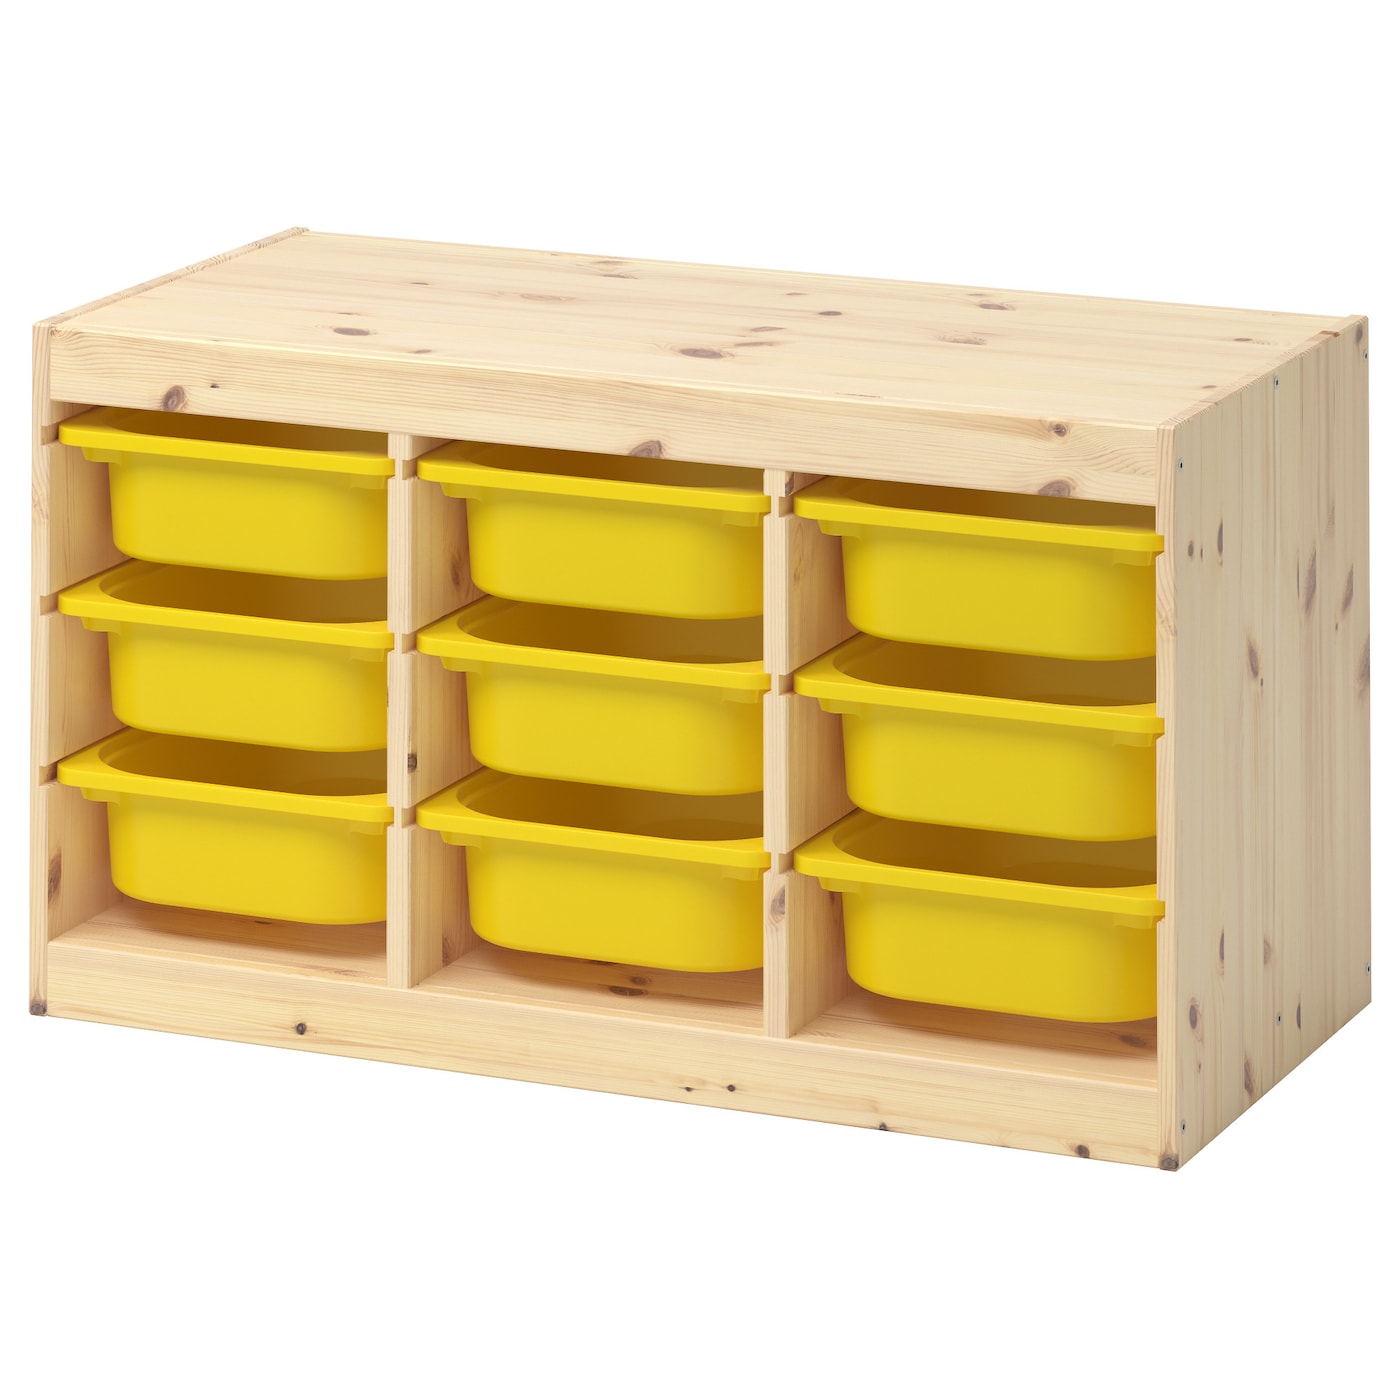 Стеллаж - IKEA TROFAST, 93х44х52 см, сосна/желтый, ТРУФАСТ ИКЕА